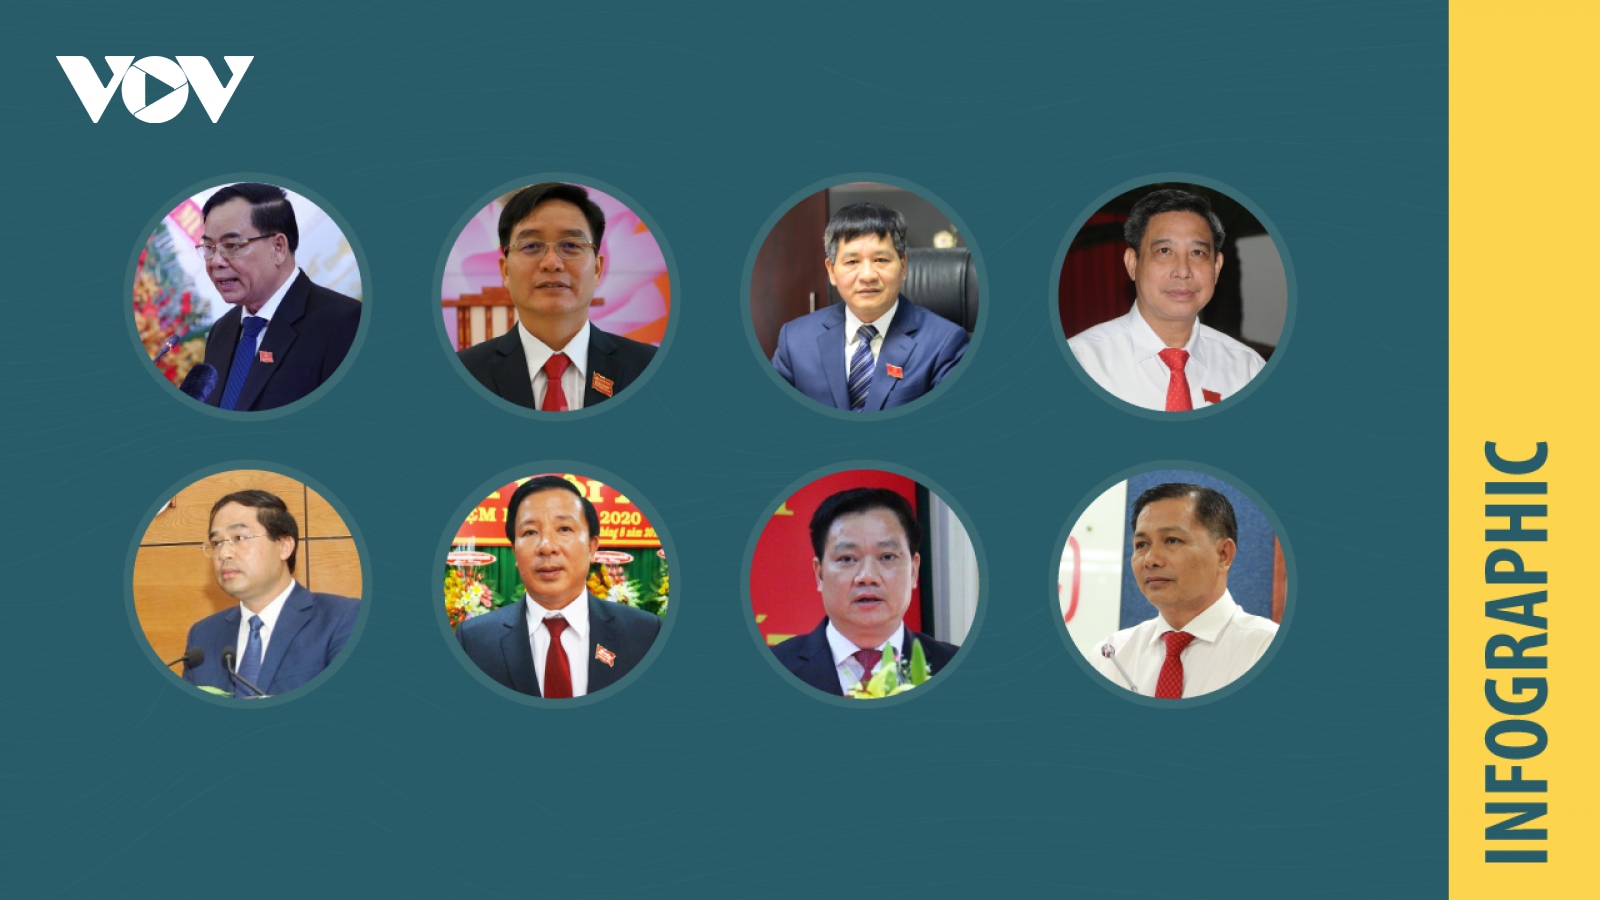 Chân dung 8 chủ tịch UBND tỉnh được bầu trong tuần từ 9 - 15/11/2020